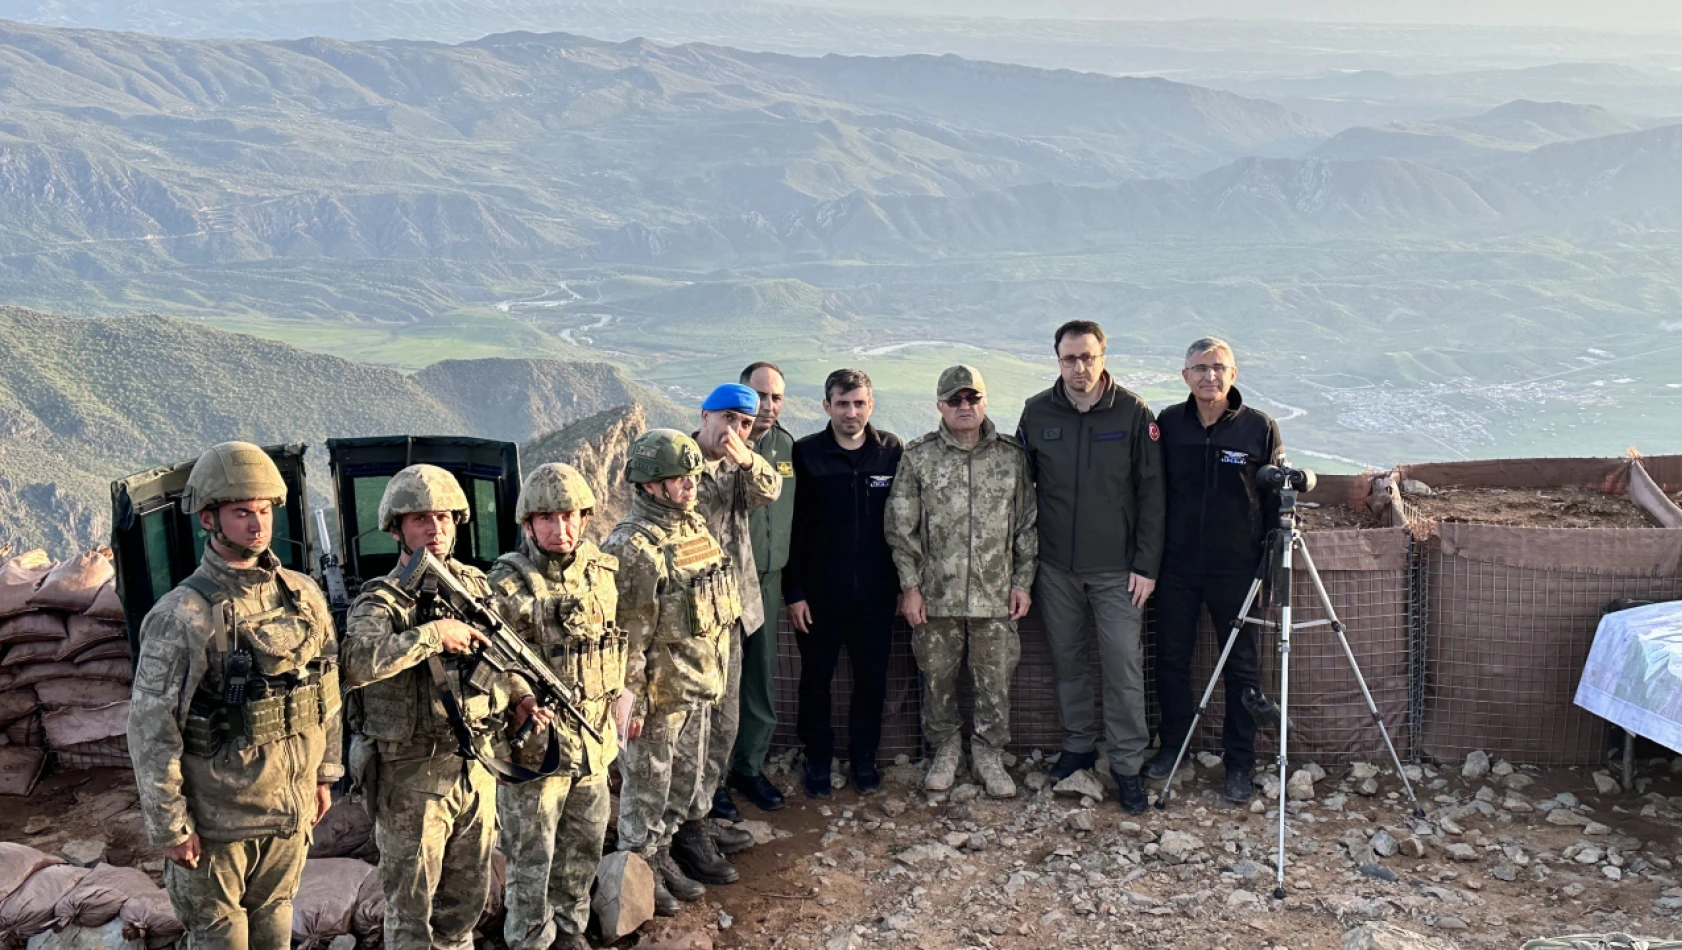 Korgeneral Metin Tokel, Selçuk Bayraktar ve Ahmet Akyol'dan sınır birliklerine bayram ziyareti